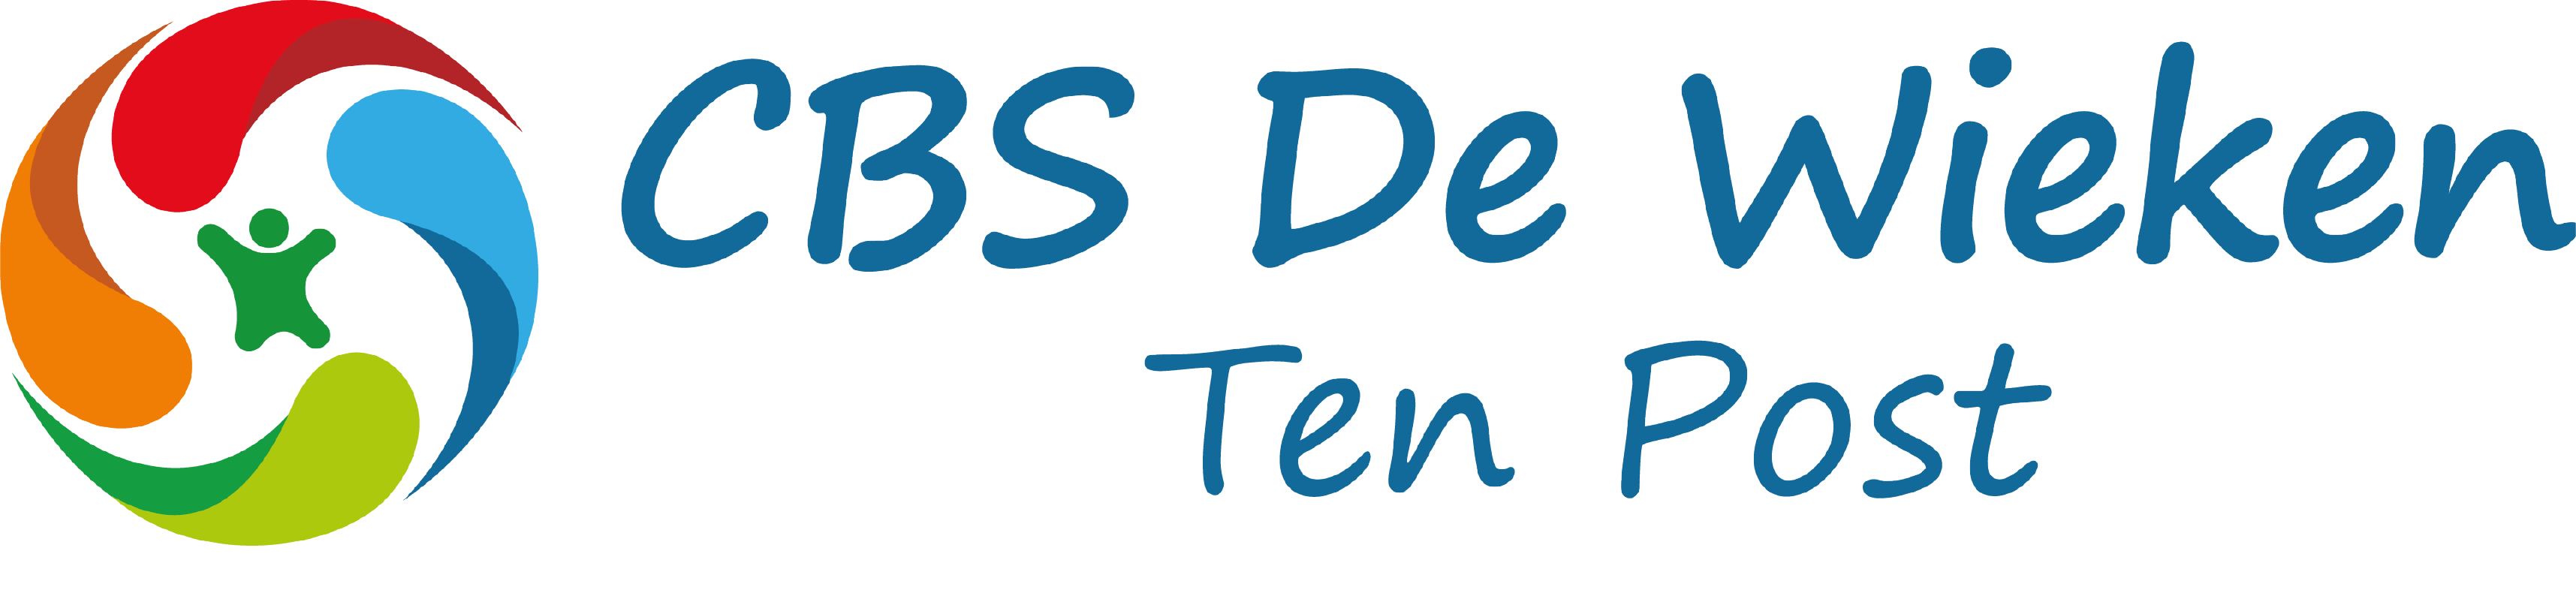 CBS De Wieken logo